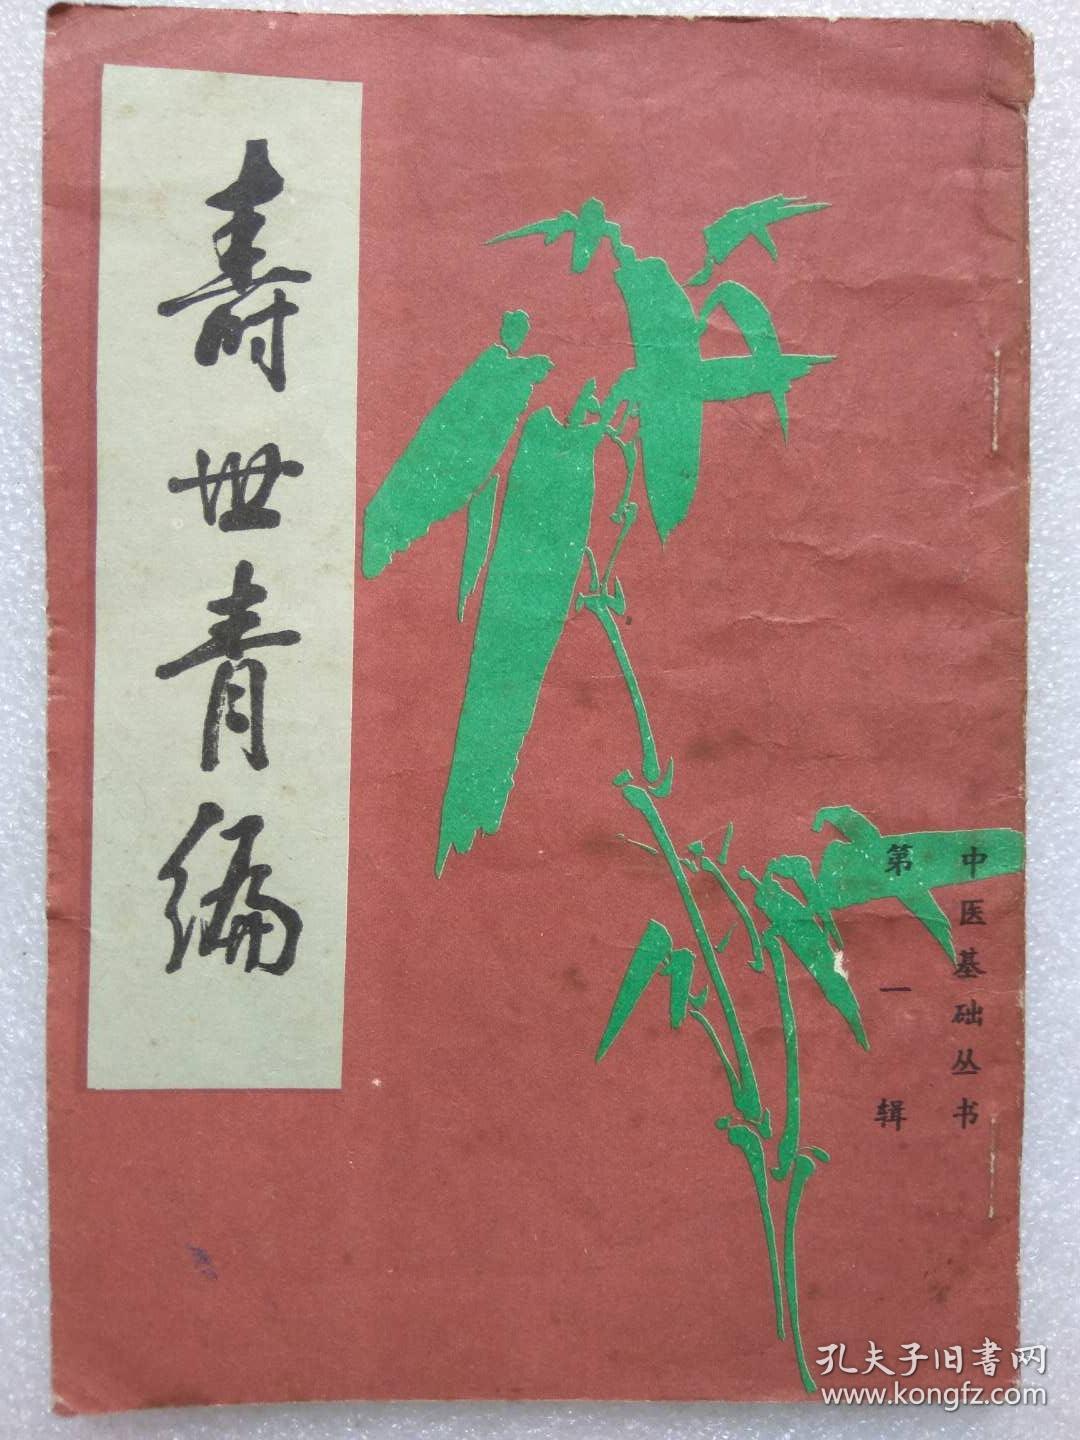 中医基础丛书--寿世青编--【清】尤乘撰。北京市中国书店据世界书局1936年《珍本医书集成》本 影印。1985年。1版1印。竖排繁体字